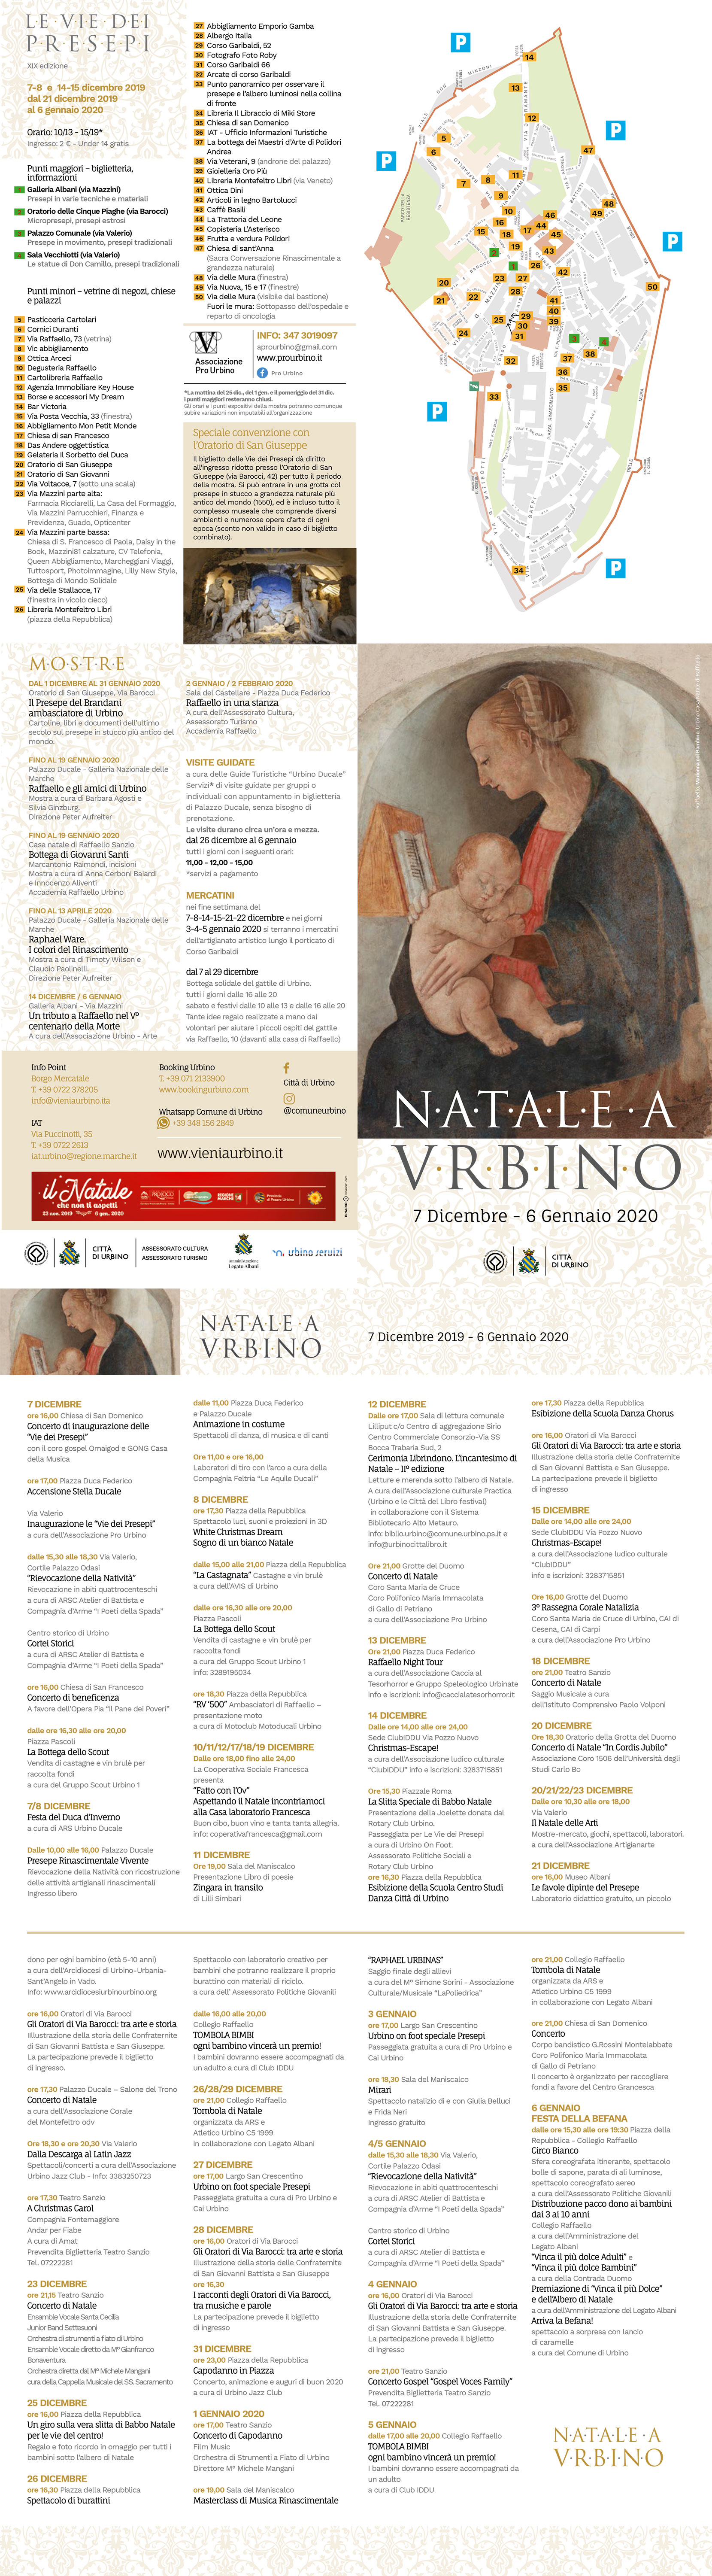 Poesie Di Natale 2020.Urbino Qui E Scaricabile Il Programma Completo Delle Manifestazioni Natalizie 2019 2020 Vieni A Urbino